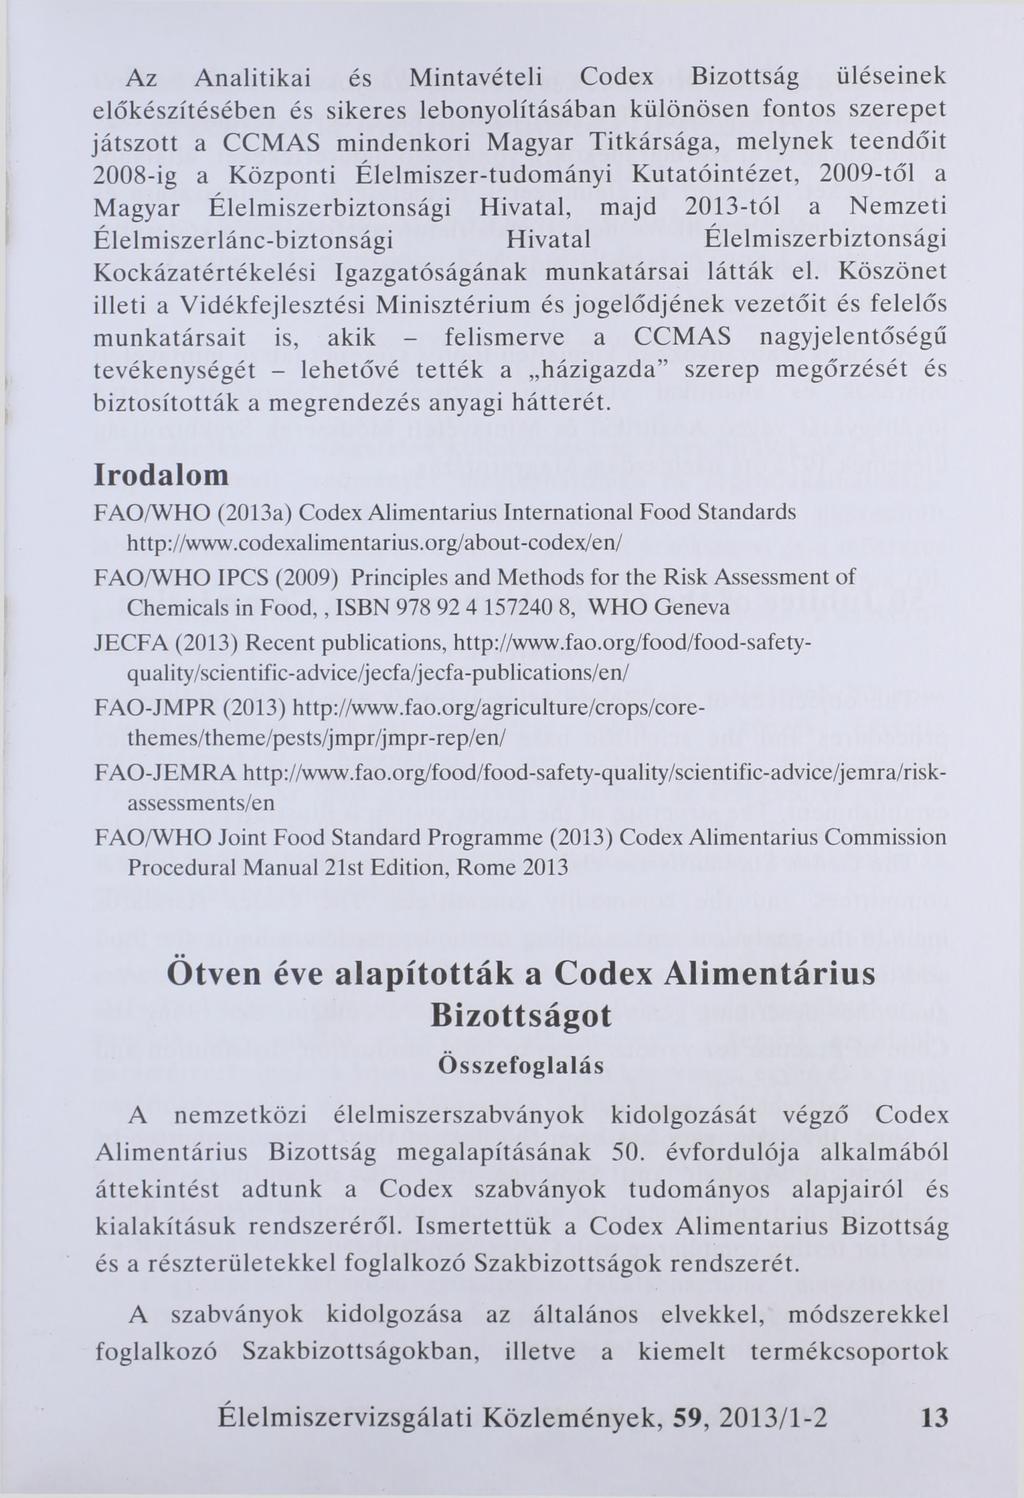 Az Analitikai és Mintavételi Codex Bizottság üléseinek előkészítésében és sikeres lebonyolításában különösen fontos szerepet játszott a CCMAS mindenkori Magyar Titkársága, melynek teendőit 2008-ig a